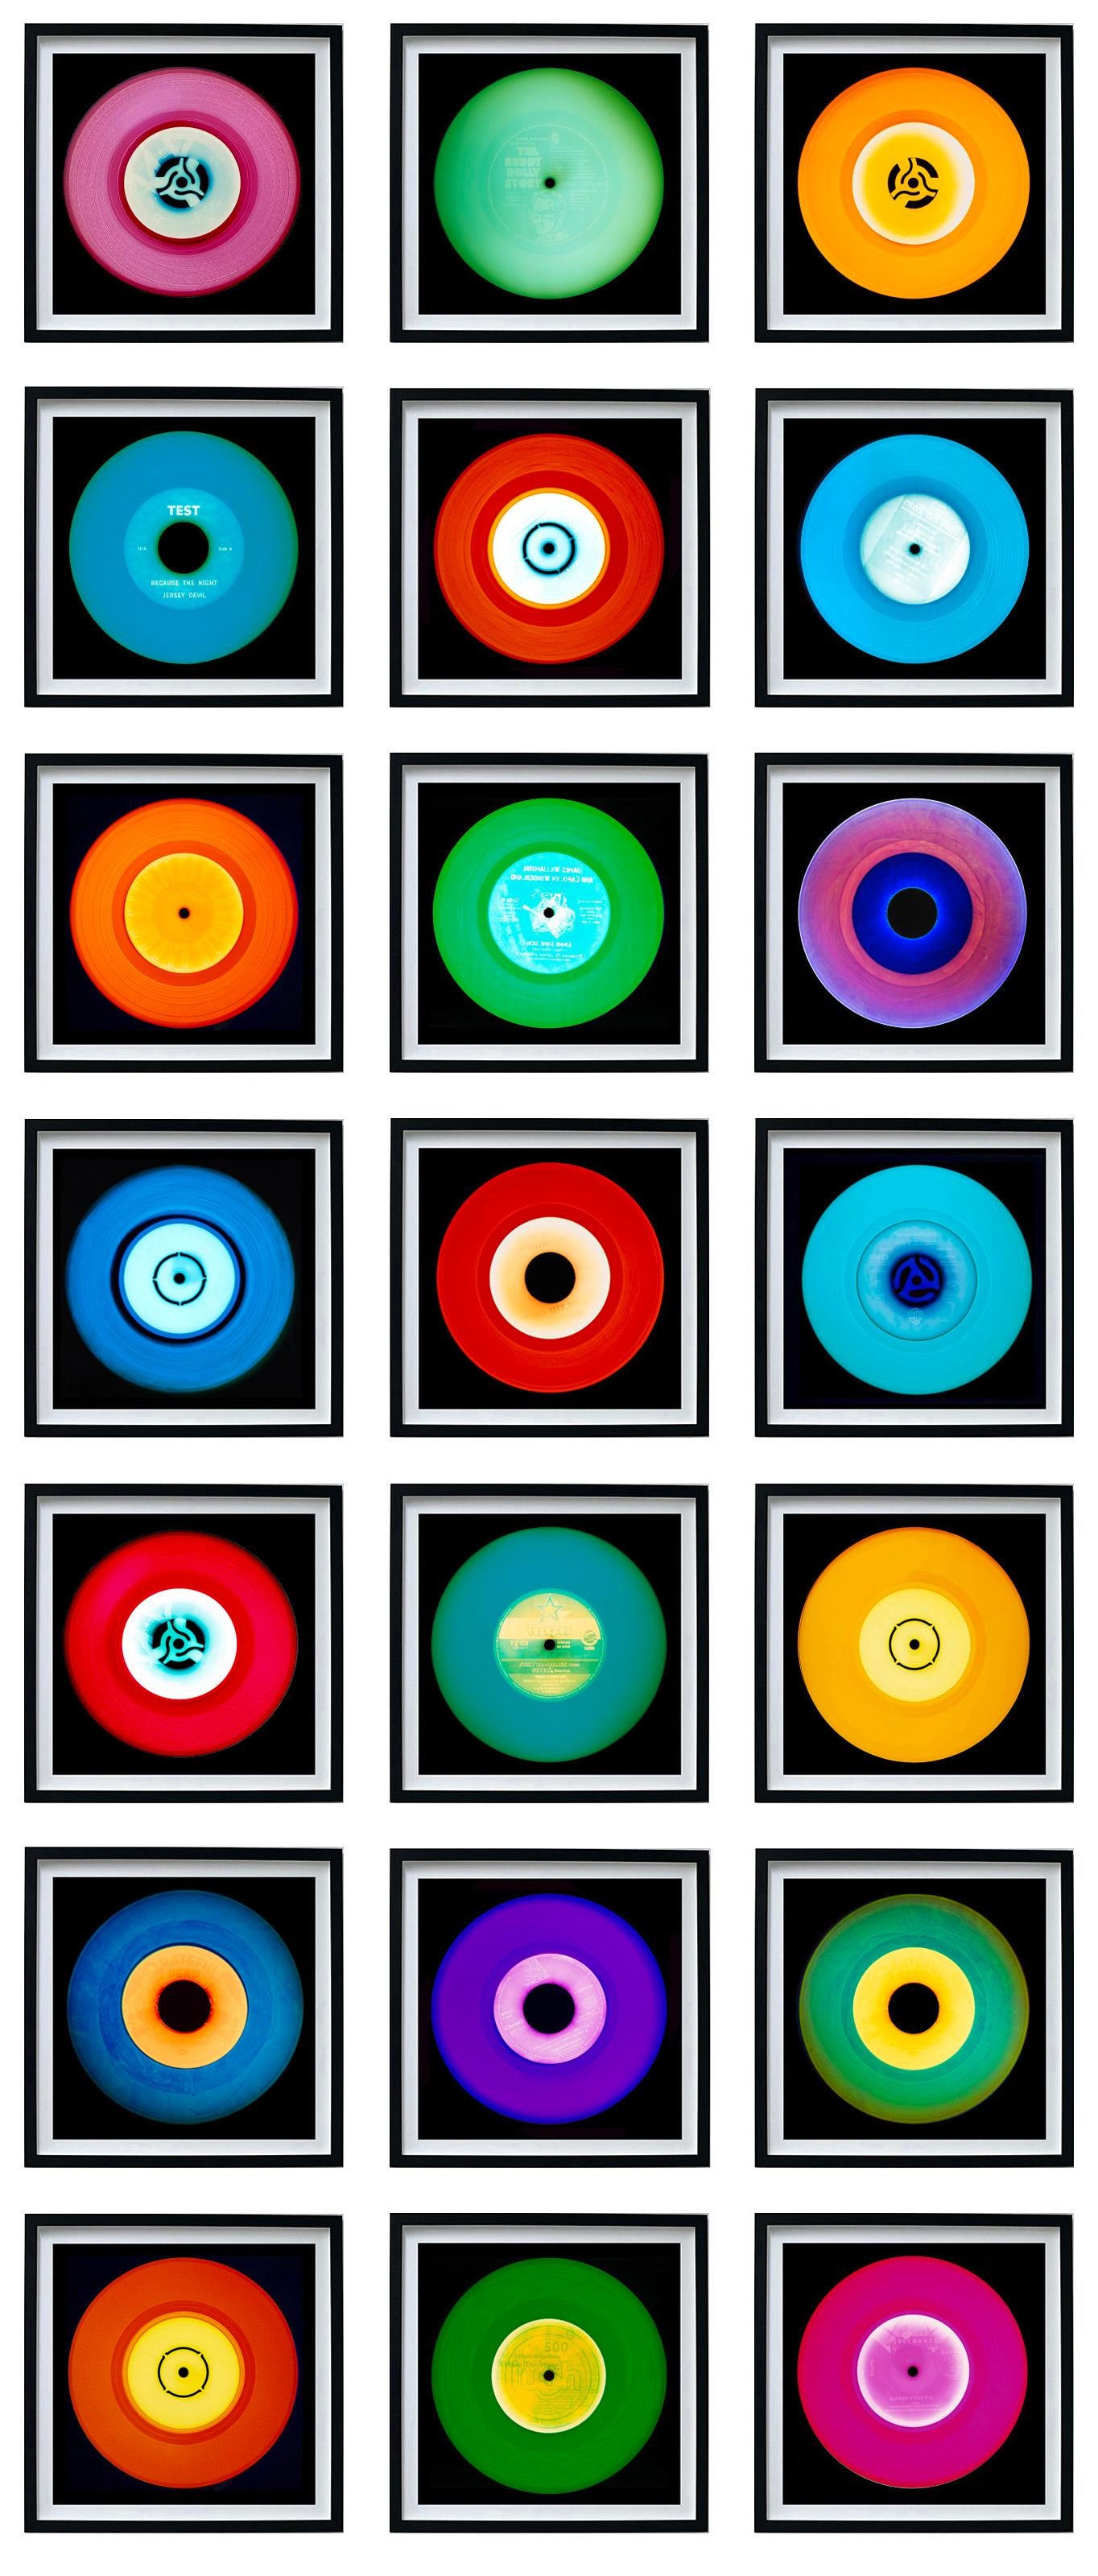 Heidler & Heeps Vinyl Collection Twenty-One Piece Multi-color Installation.
Die renommierten zeitgenössischen Fotografen Richard Heeps und Natasha Heidler haben für diese wunderschöne, faszinierende Kollektion zusammengearbeitet. Ein Fest der